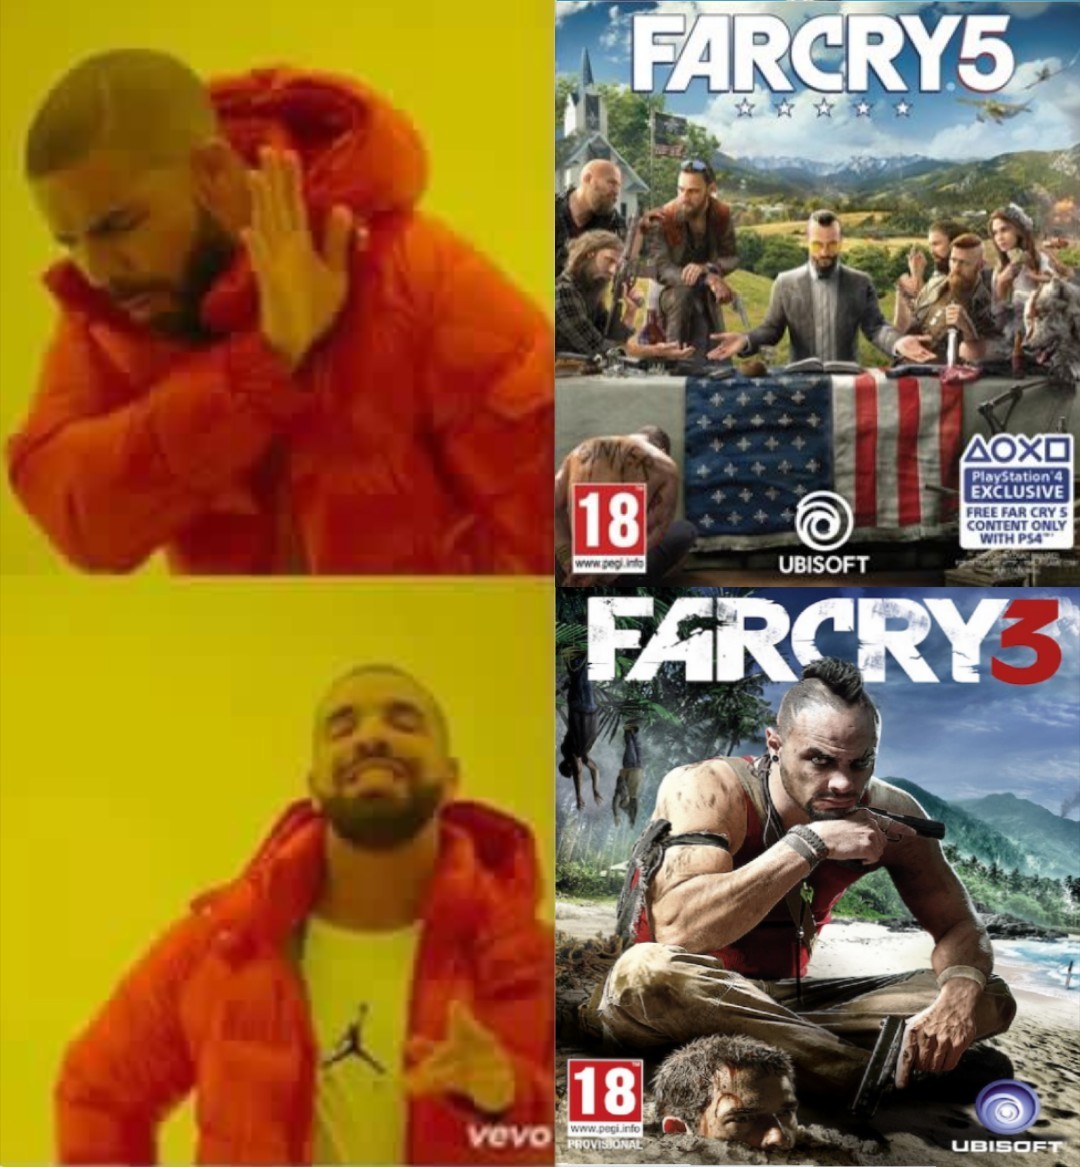 El Titulo esta jugando Far Cry 3 porque es pobre y no tiene ps4 ni Xbox - meme